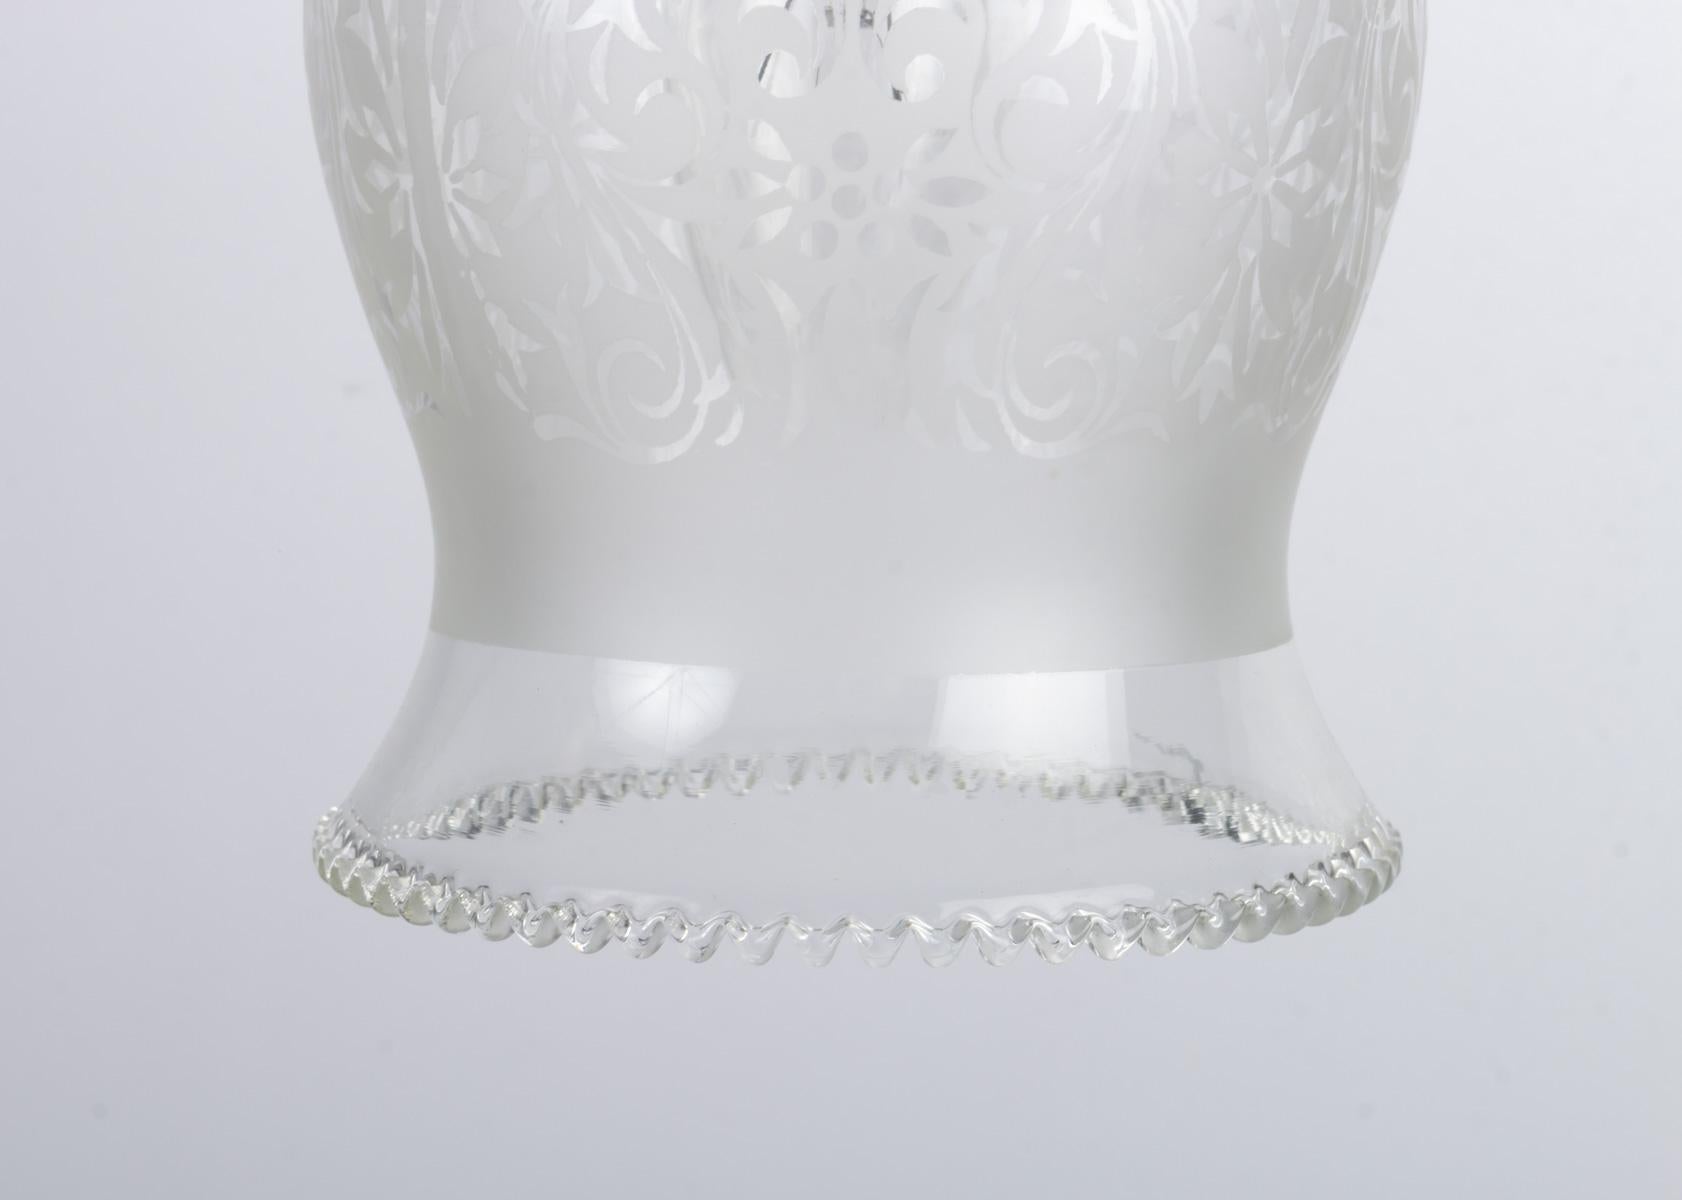 Hängelampenlampe aus graviertem Glas (Art nouveau)